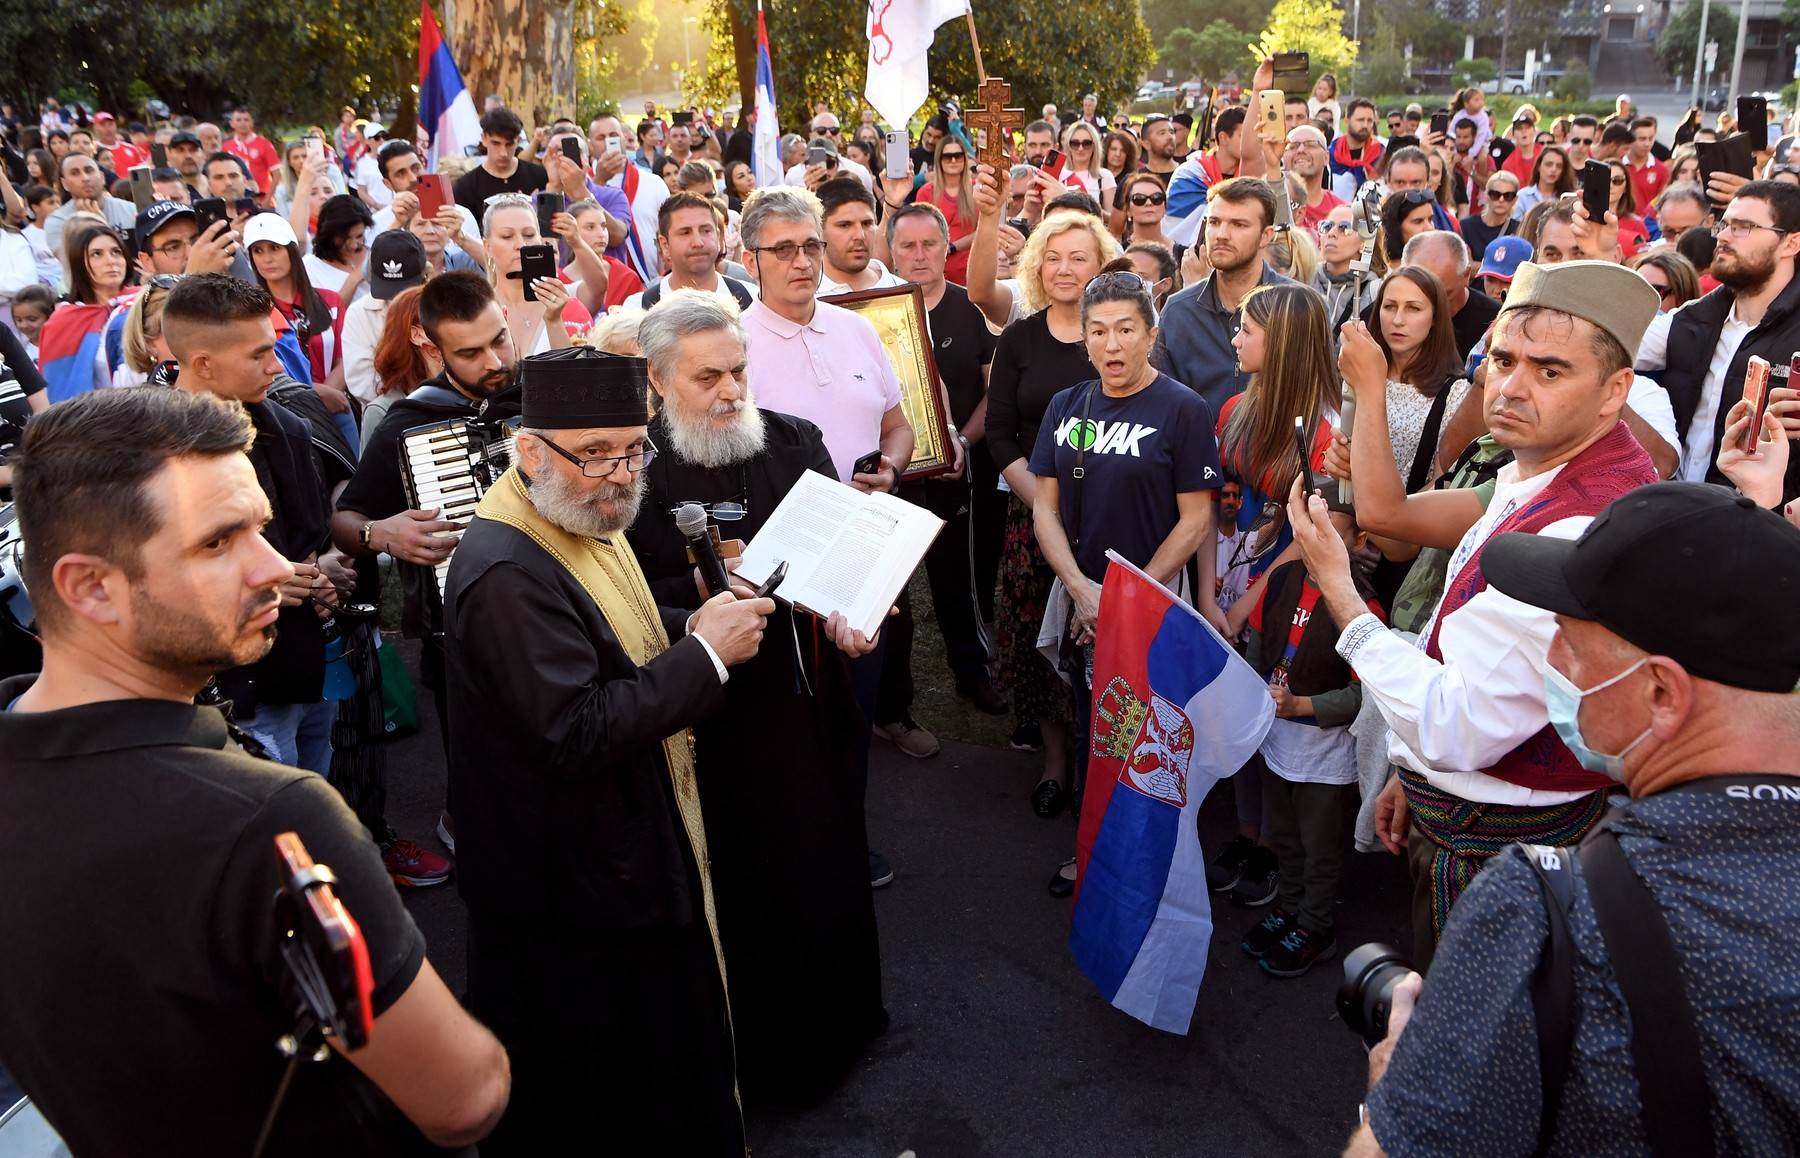 Ispred zgrade u kojoj je Novak bio izoliran, protestnici su plesali kolo te je pravoslavni svećenik održavao misu